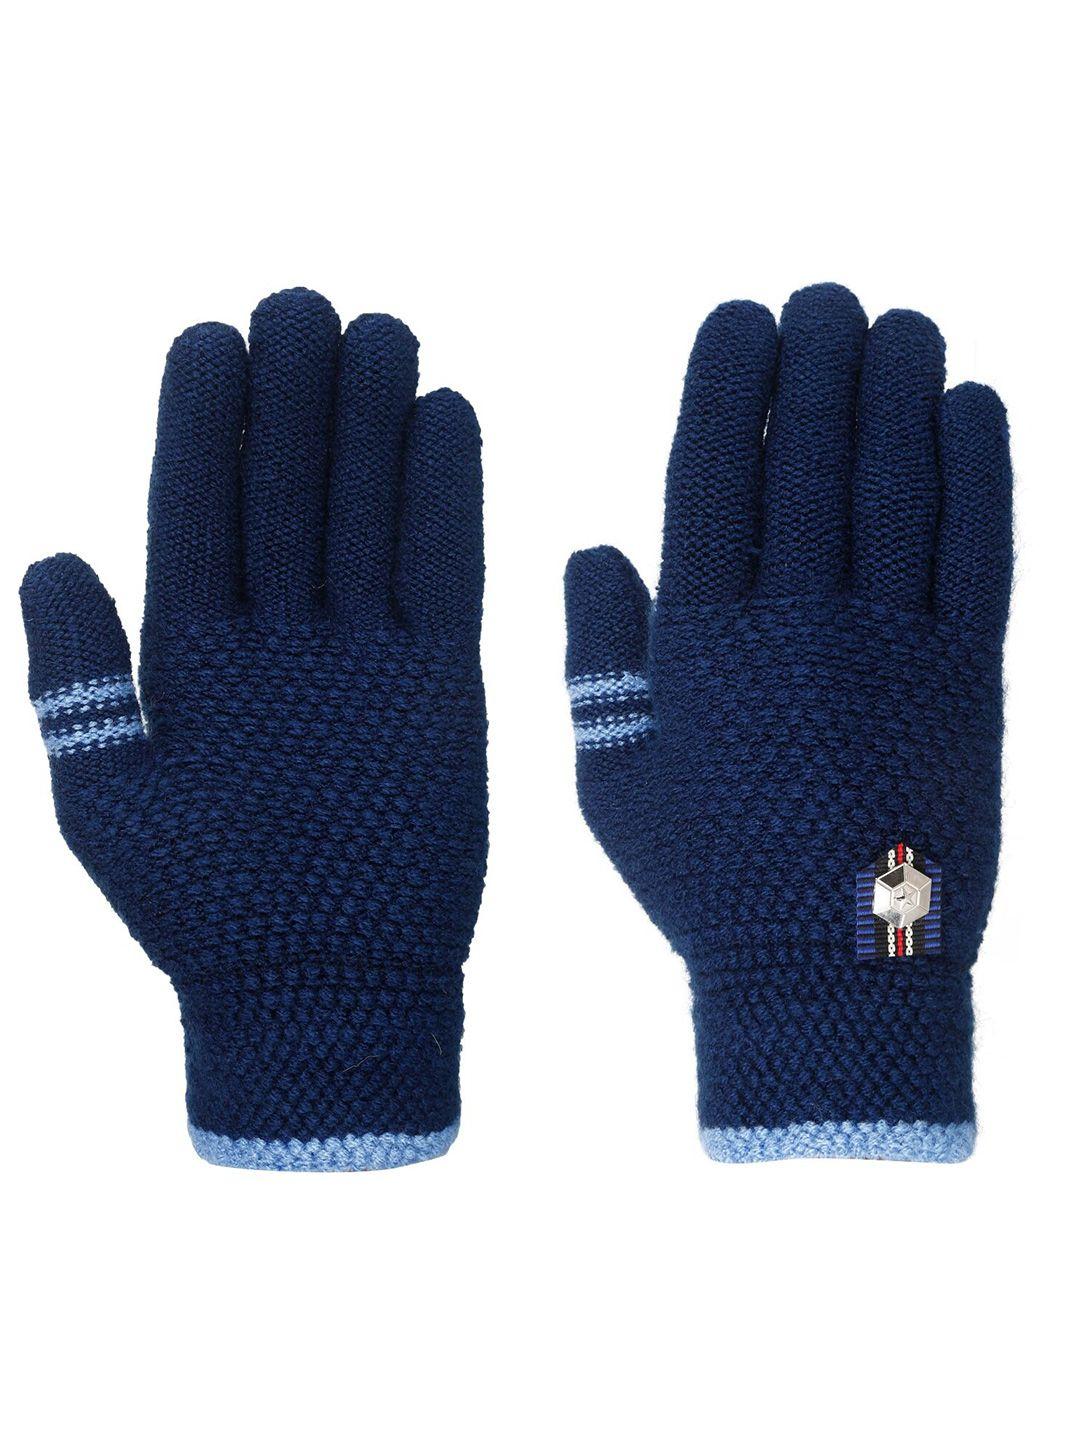 fabseasons kids acrylic woollen winter gloves